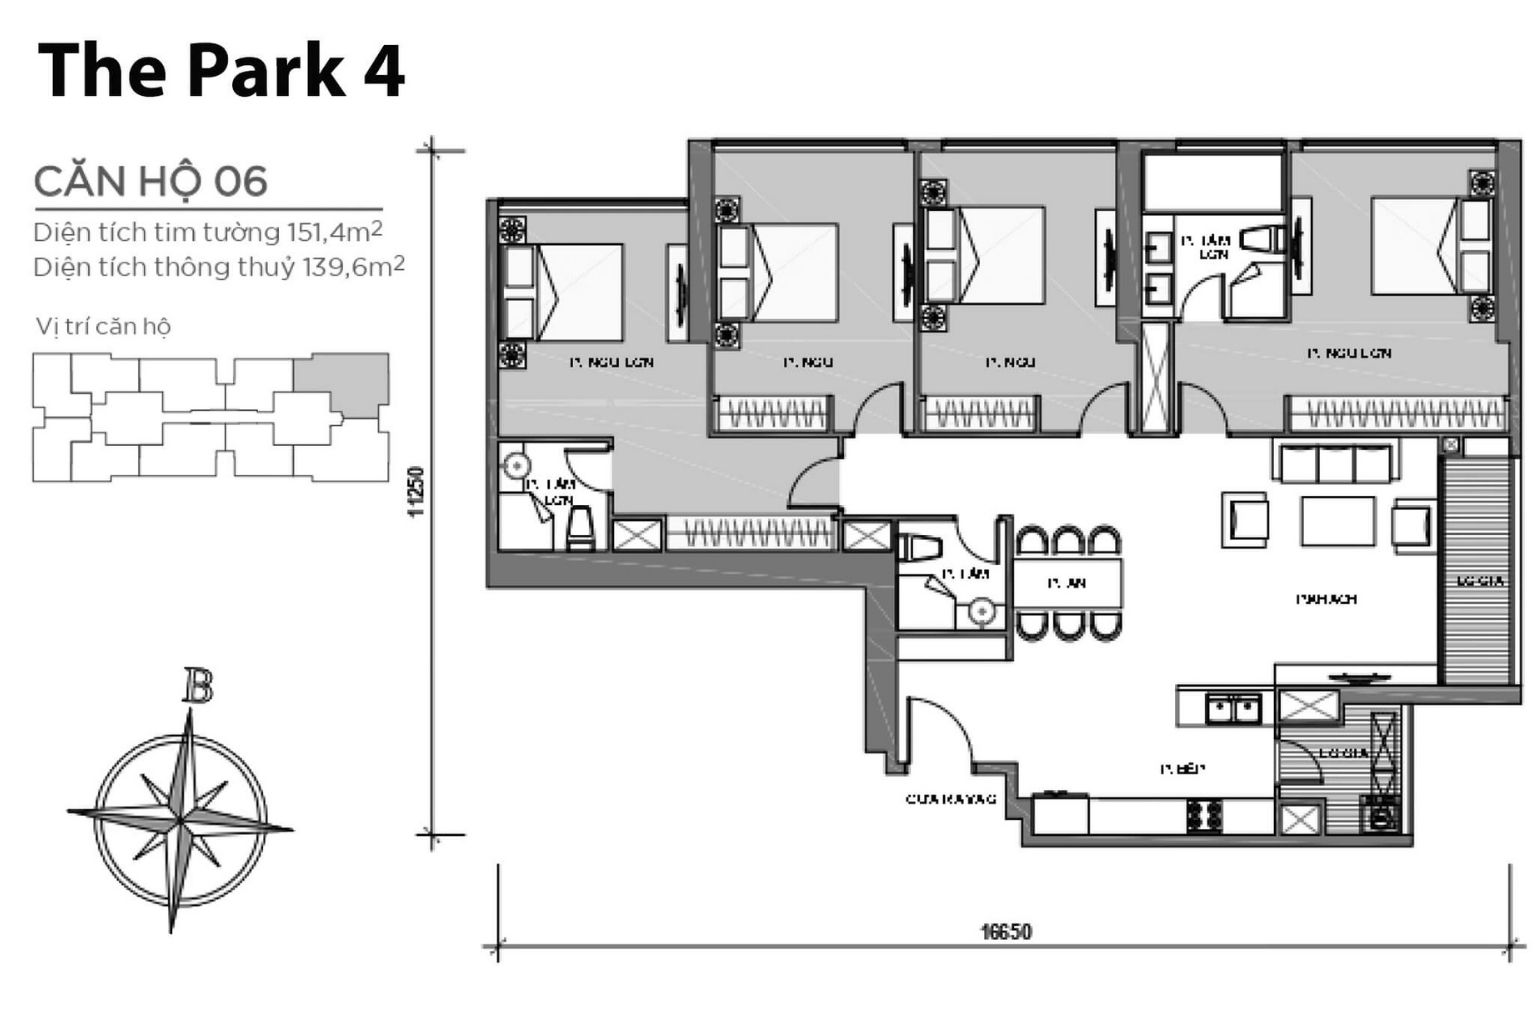 Layout căn hộ P4-06 tầng 2-23 & 24-43